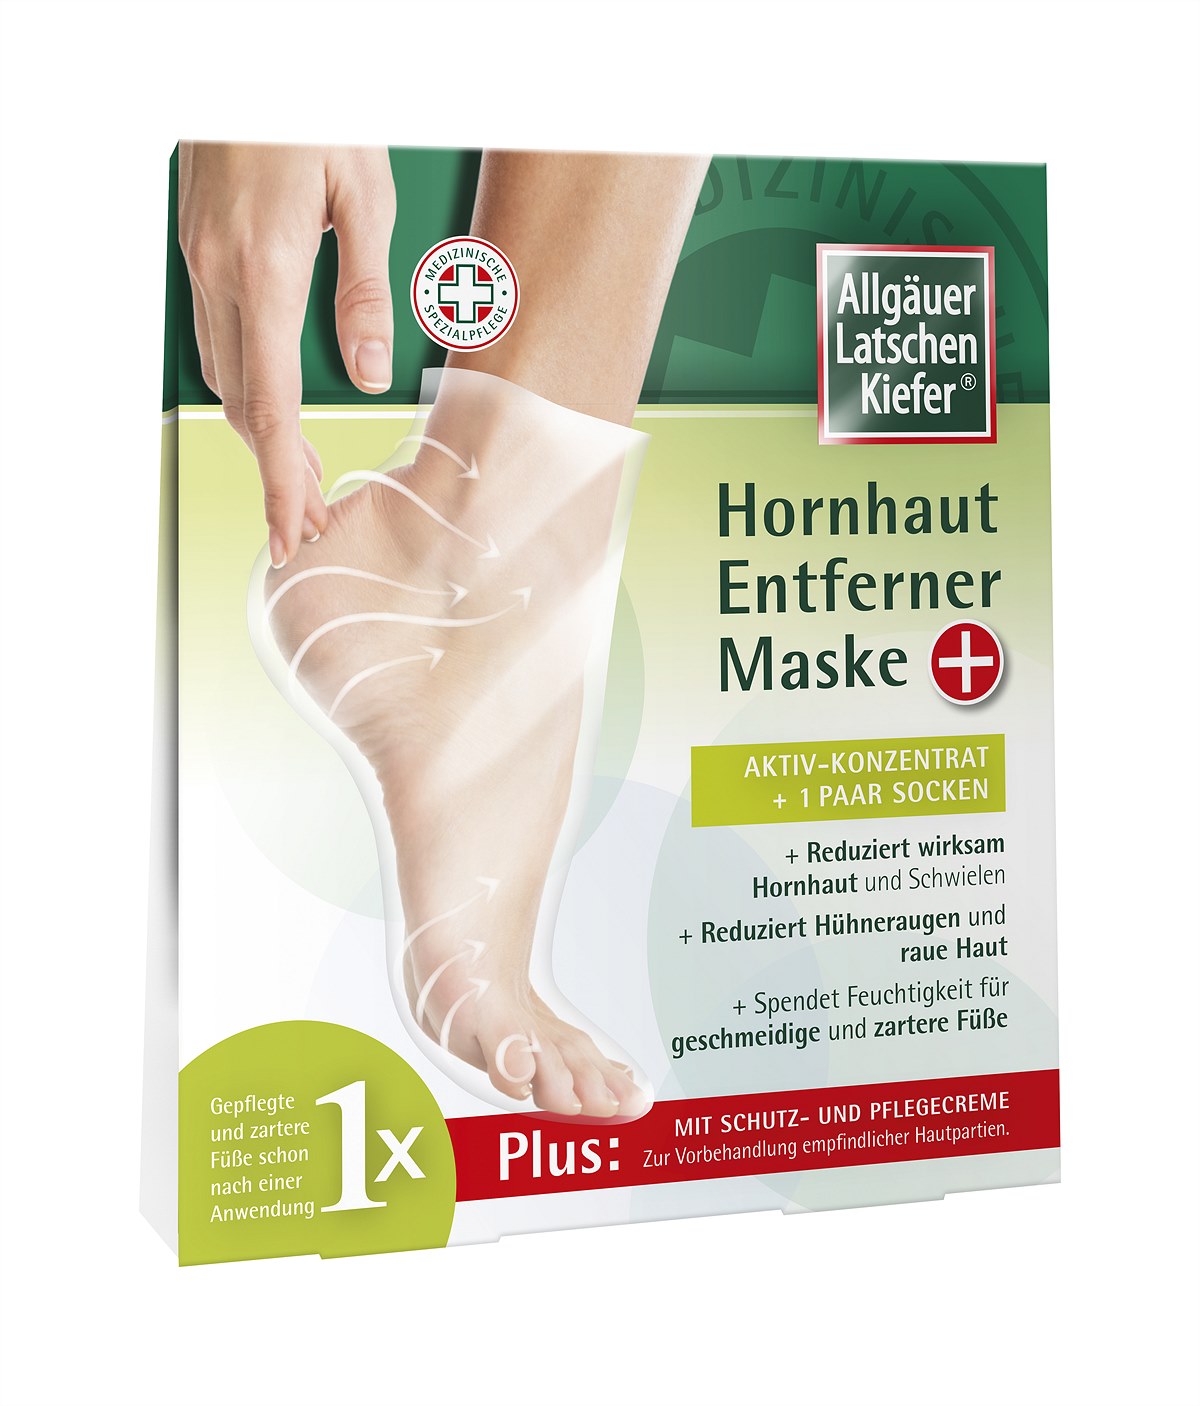 Allgäuer Latschenkiefer - Hornhaut-Entferner-Maske